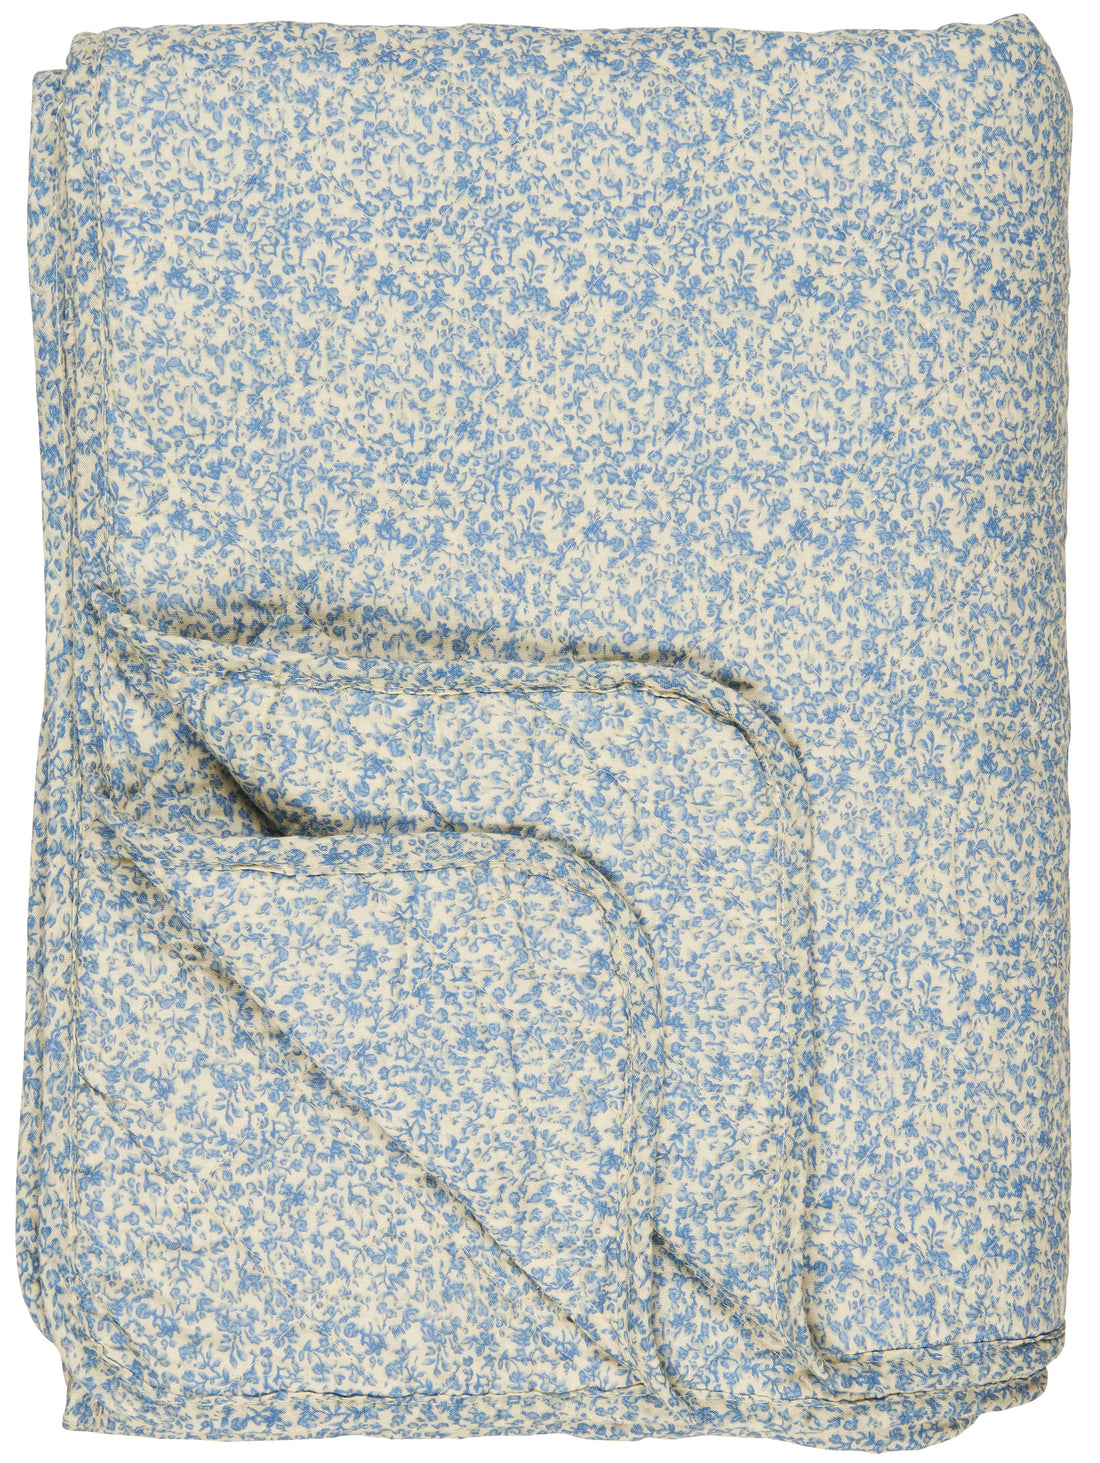 Ib Laursen tæppe: blå med små blomster